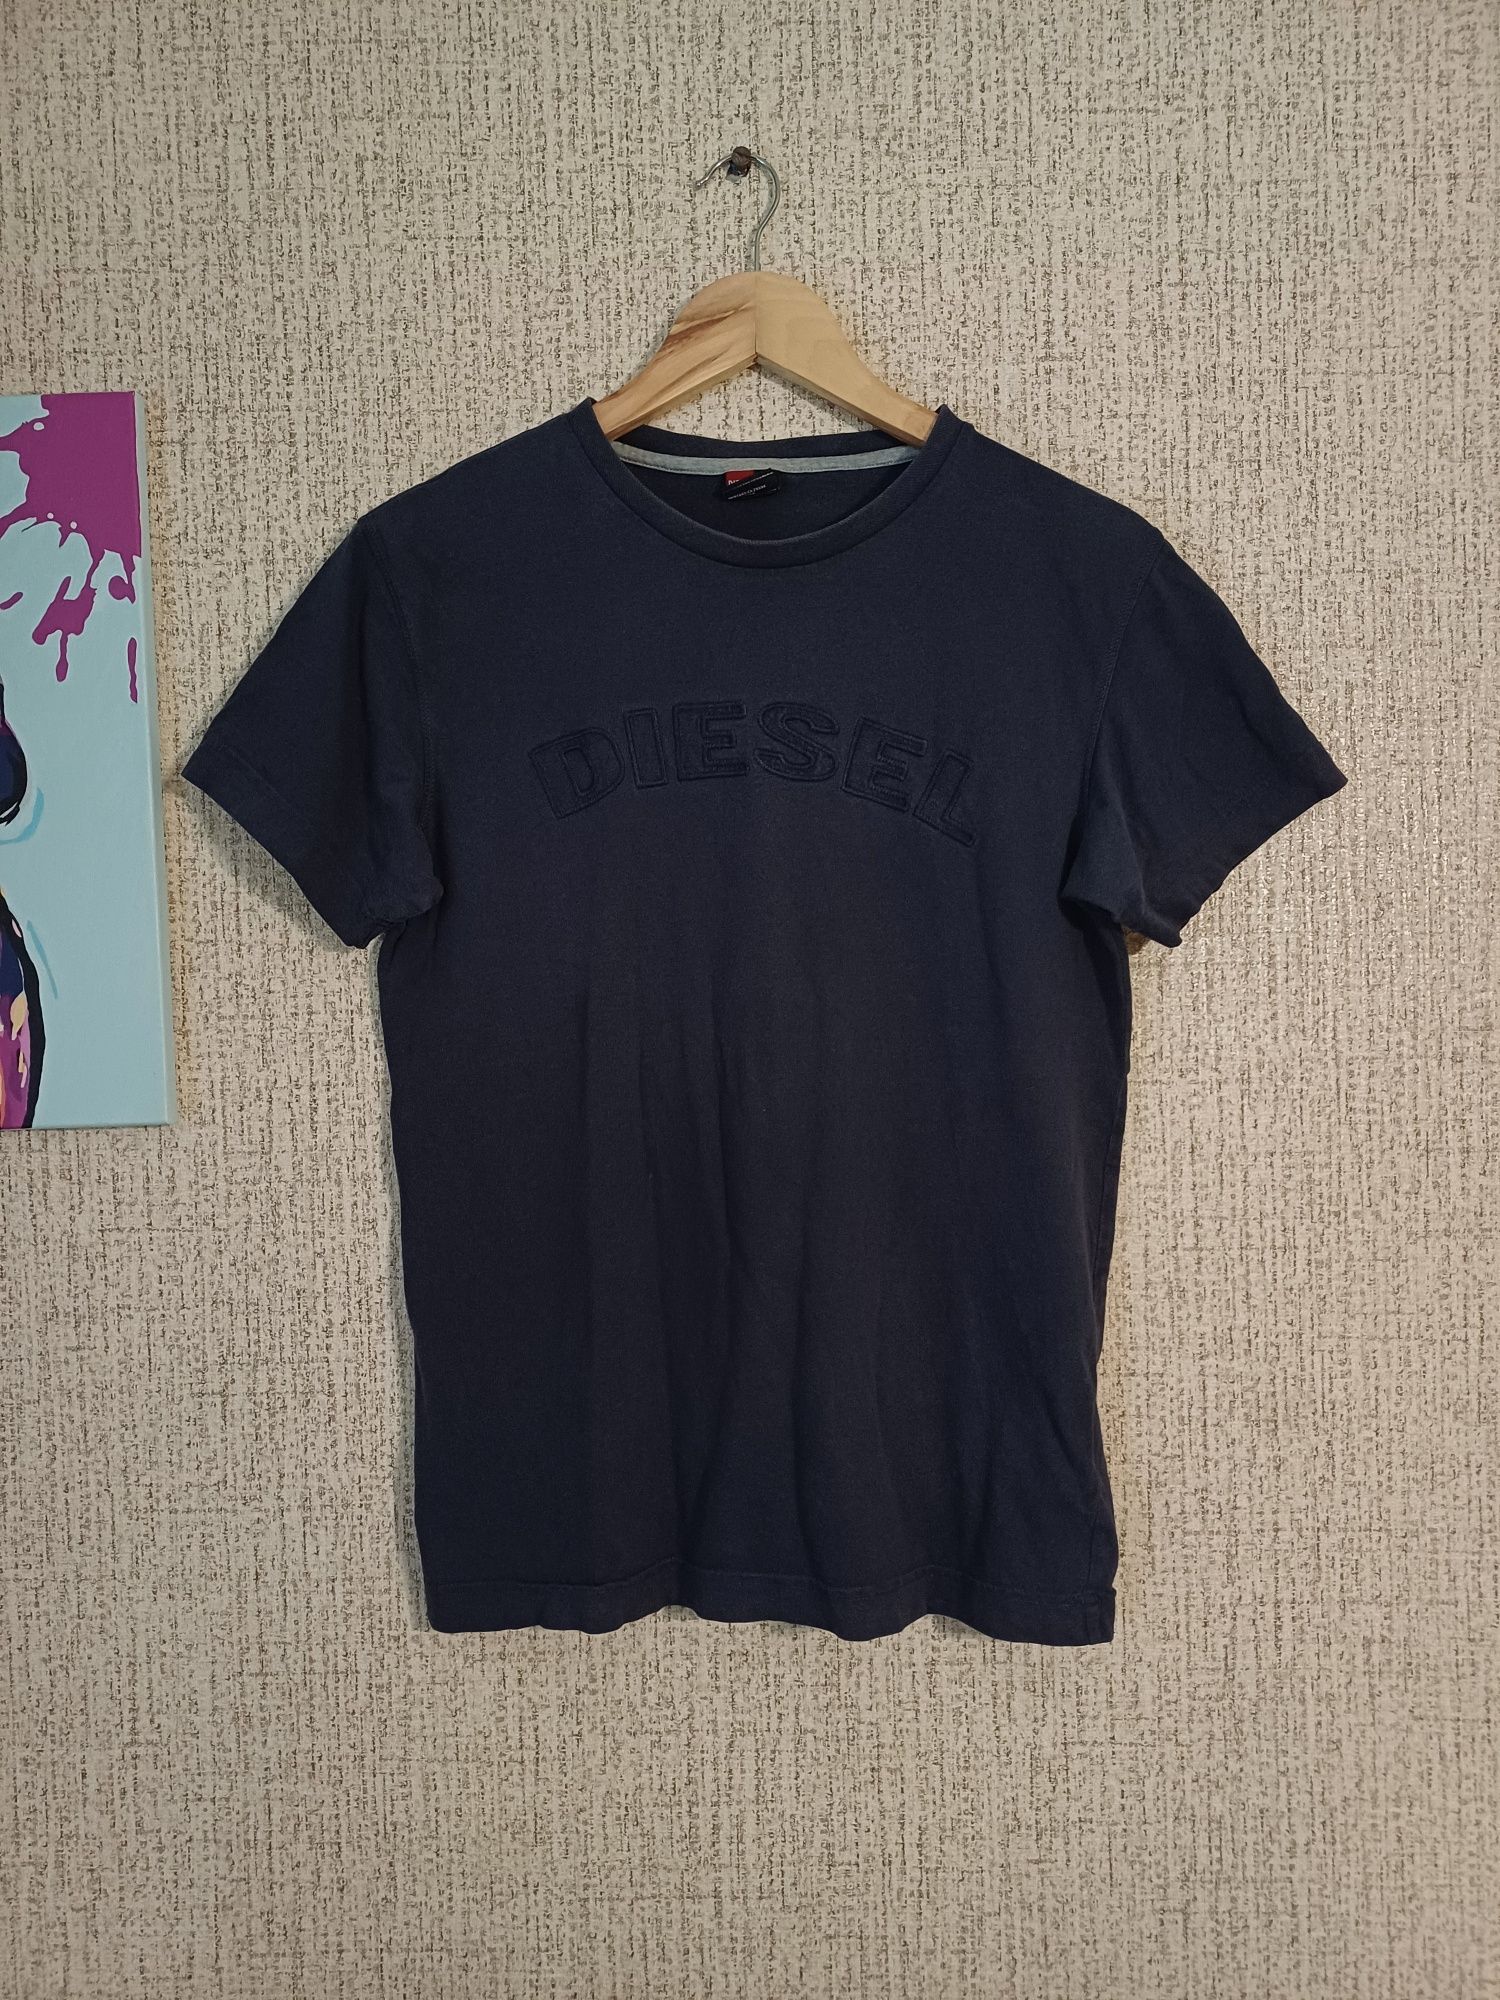 Мужская футболка от Diesel M L